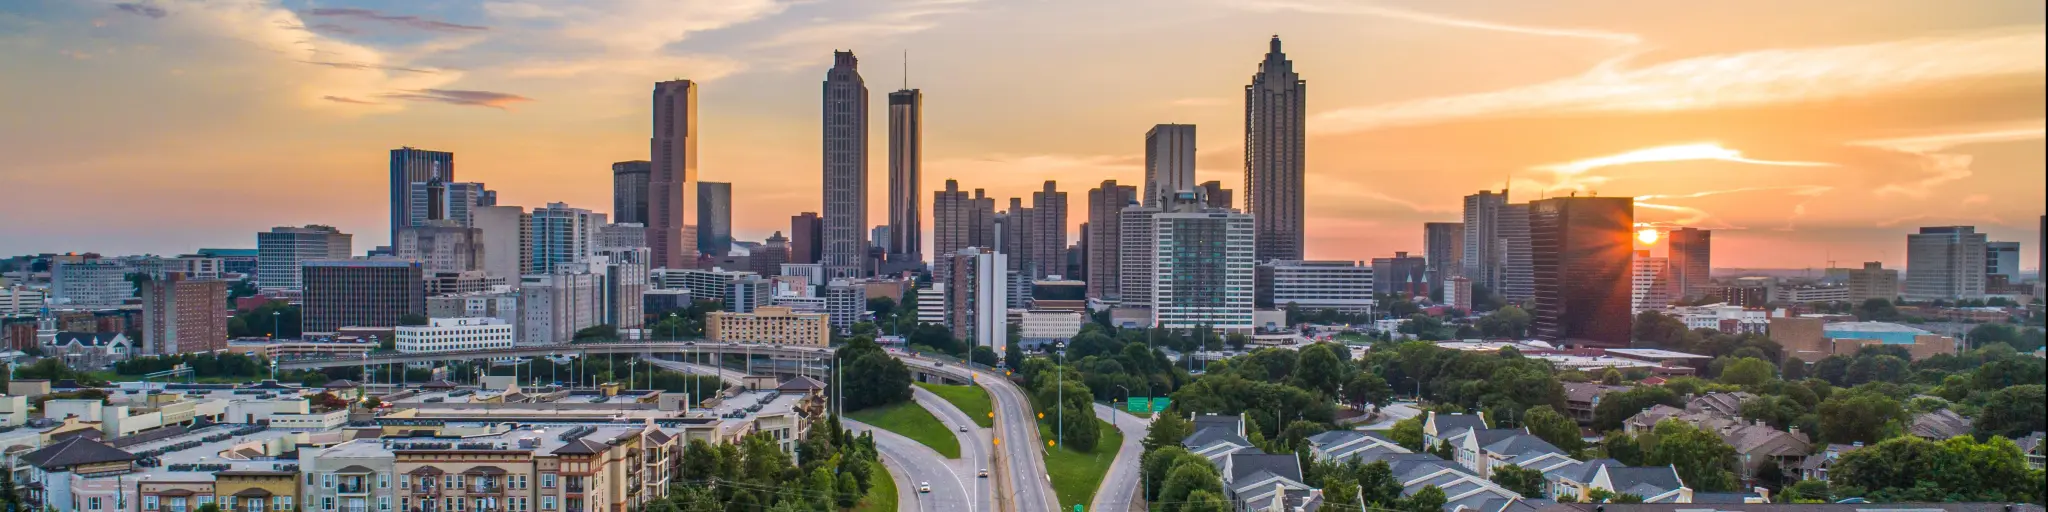 Atlanta, Georgia, USA skyline sunset.